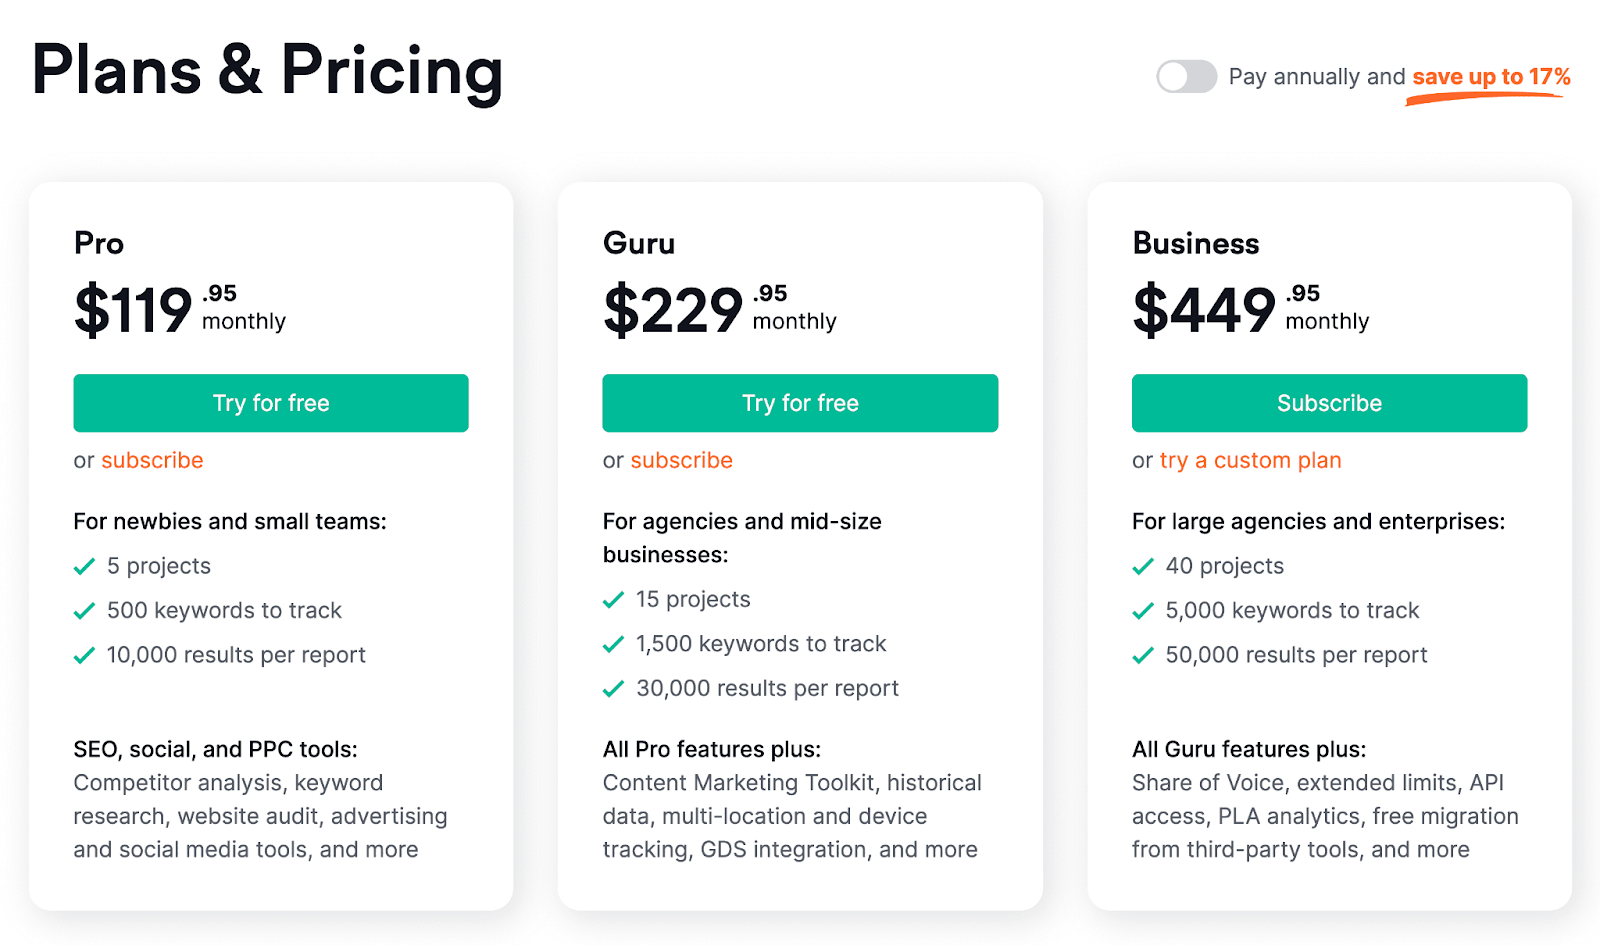 Semrush’s "Plans & Pricing" site